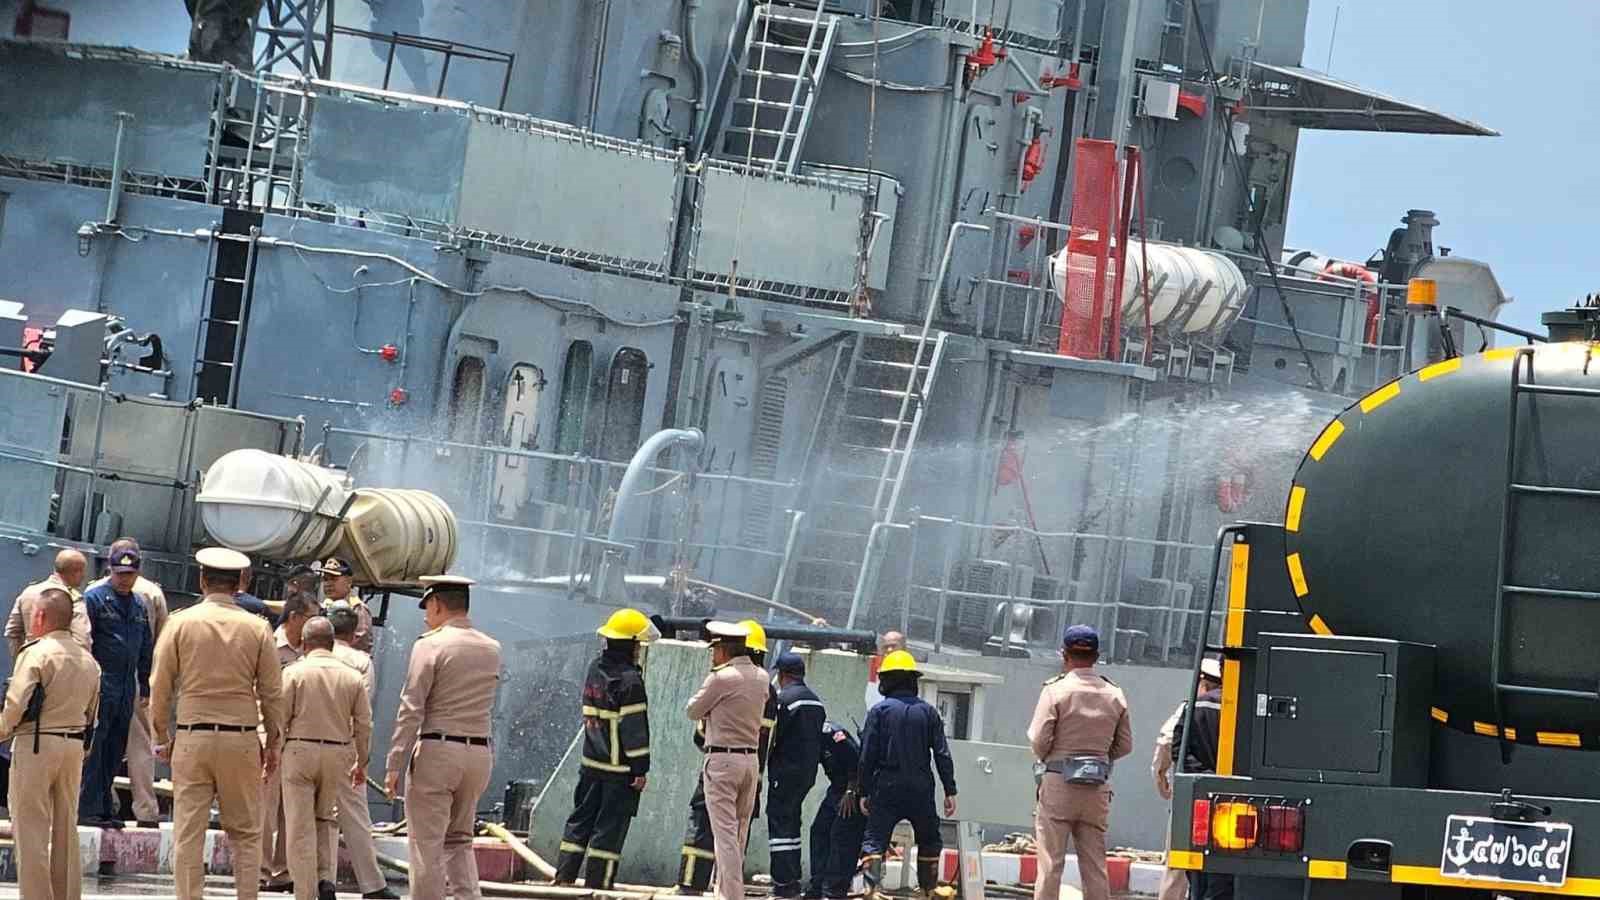 Tayland’da savaş gemisinden kazayla ateşlenen top mermisi başka bir gemiye isabet etti: 13 yaralı
